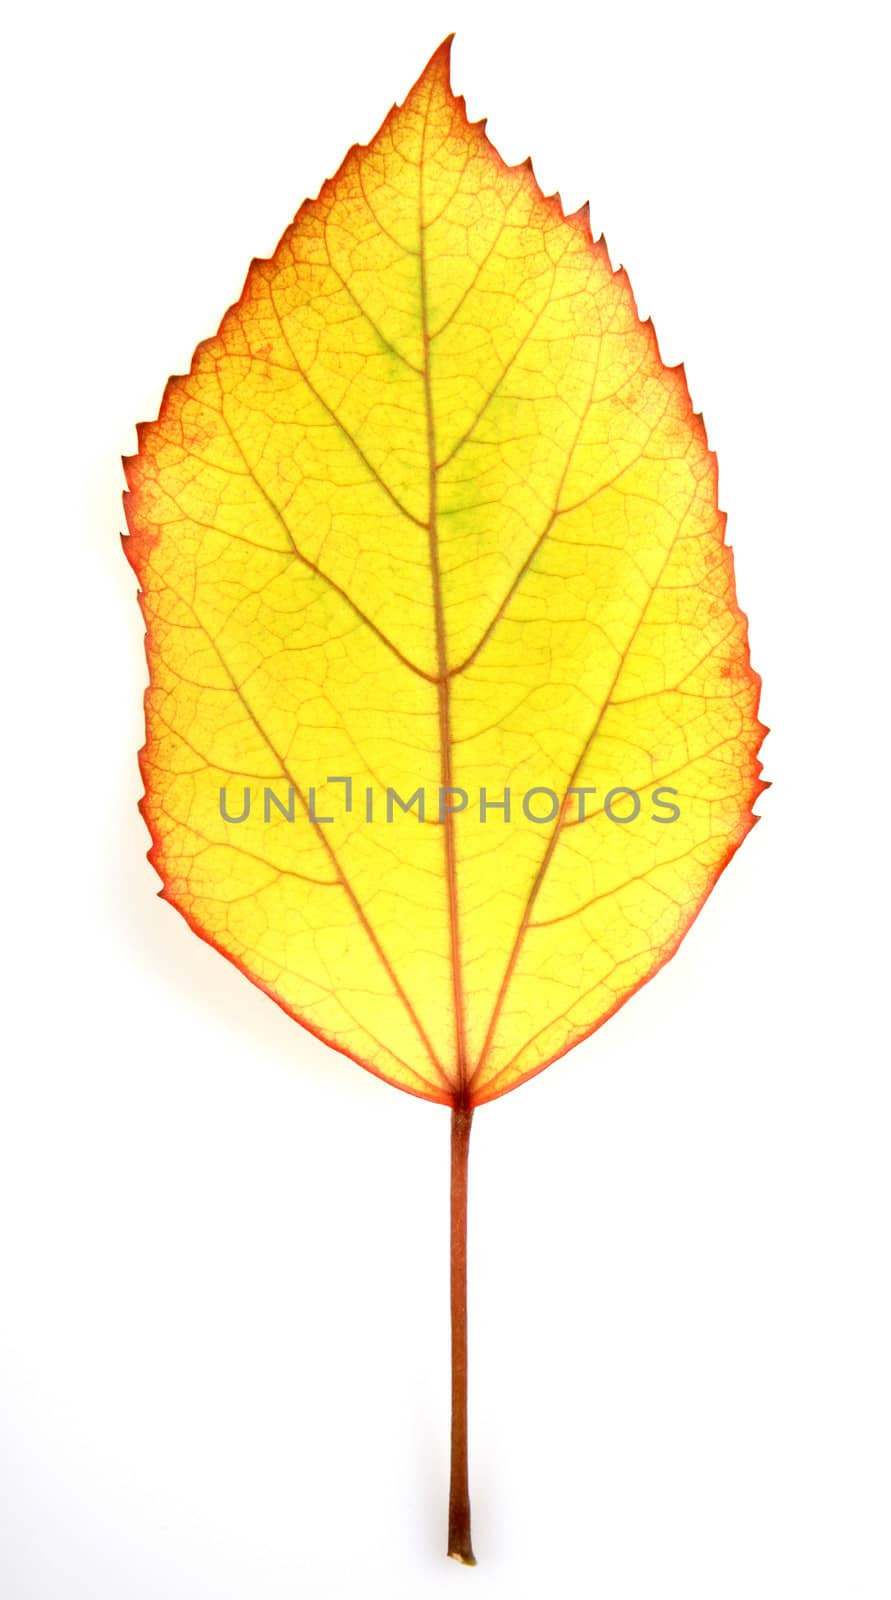 leaf on a white background by nenov